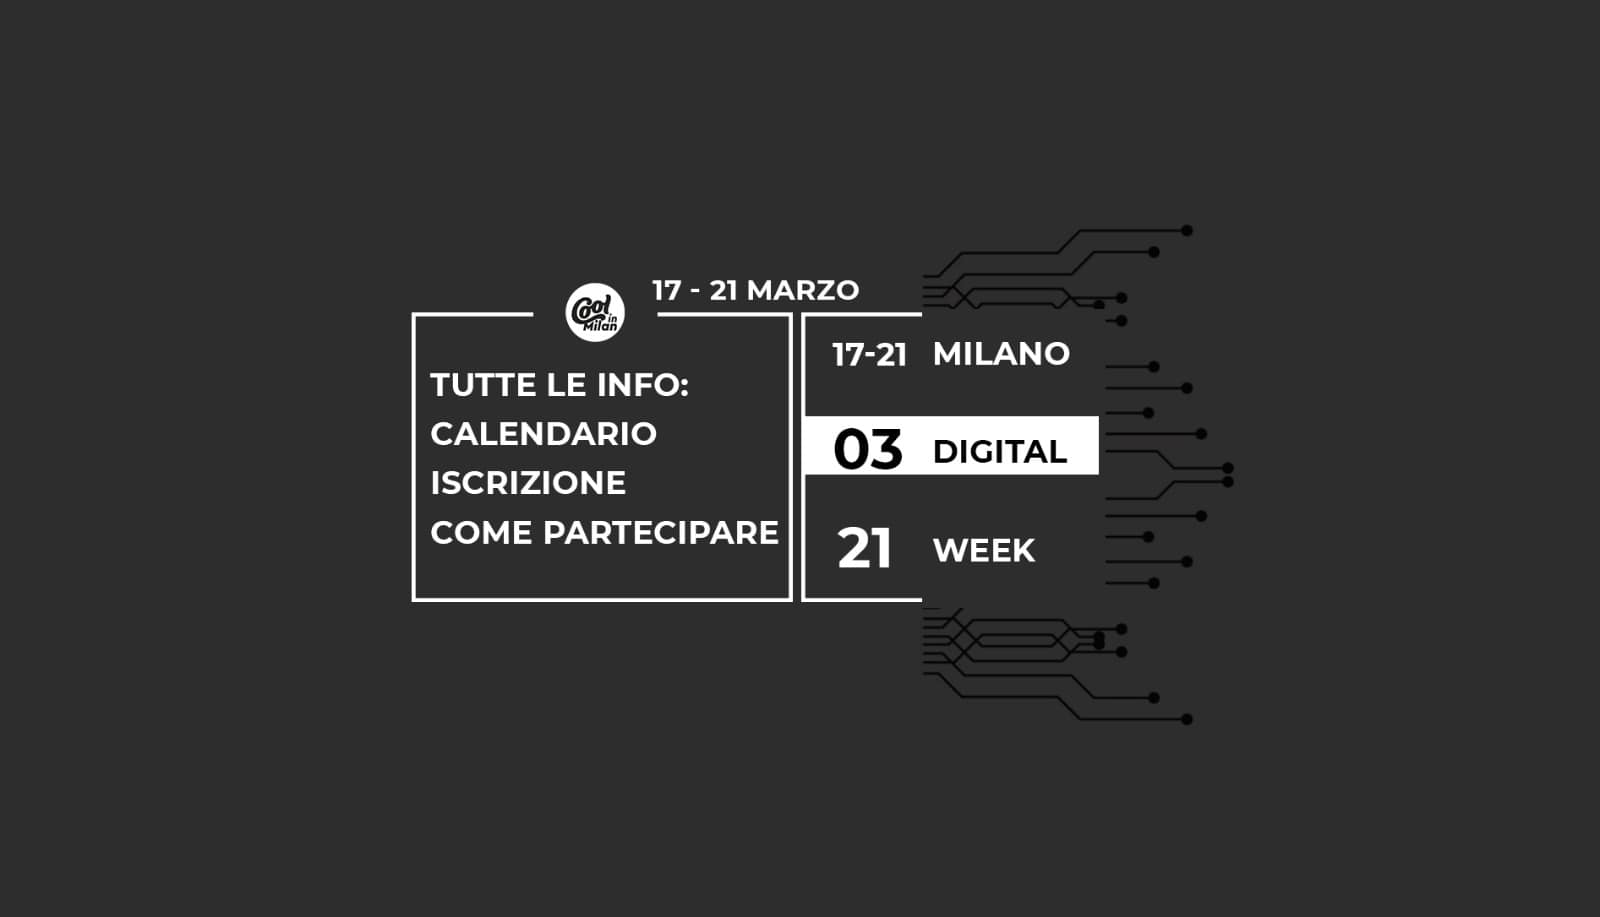 Milano Digital Week 2021: info, calendario, iscrizione, come partecipare